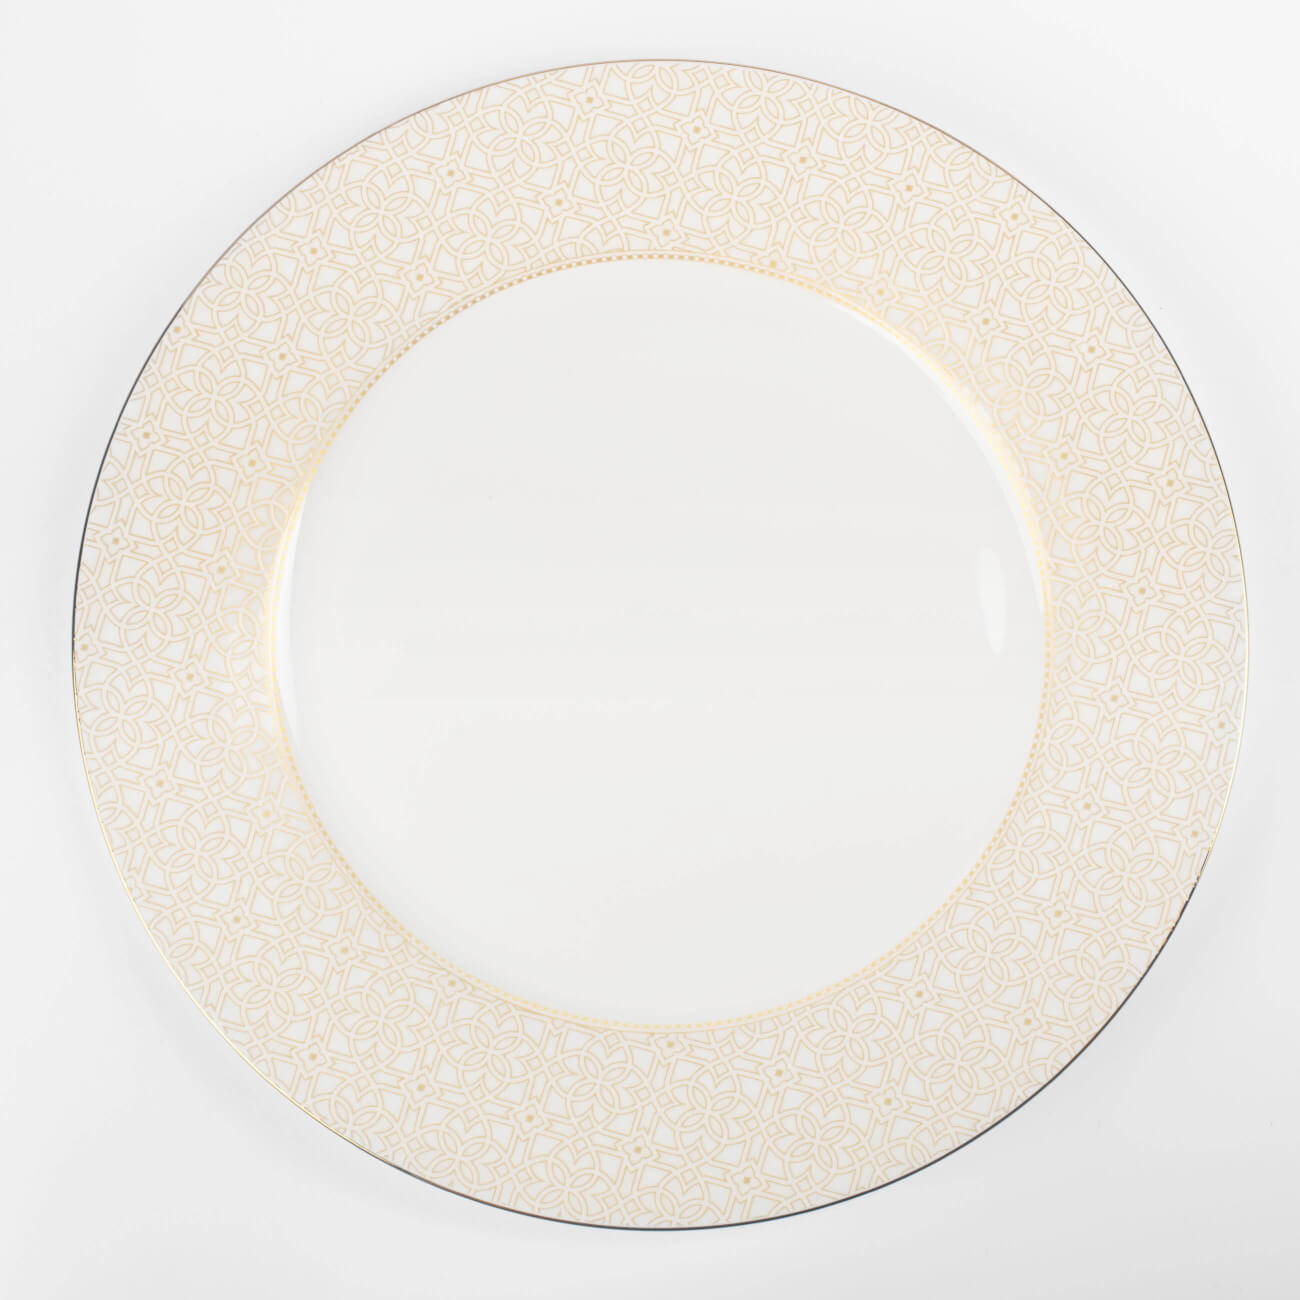 Тарелка обеденная, 27 см, фарфор F, с золотистым кантом, Орнамент, Liberty тарелка обеденная 26 см фарфор f белая ideal silver